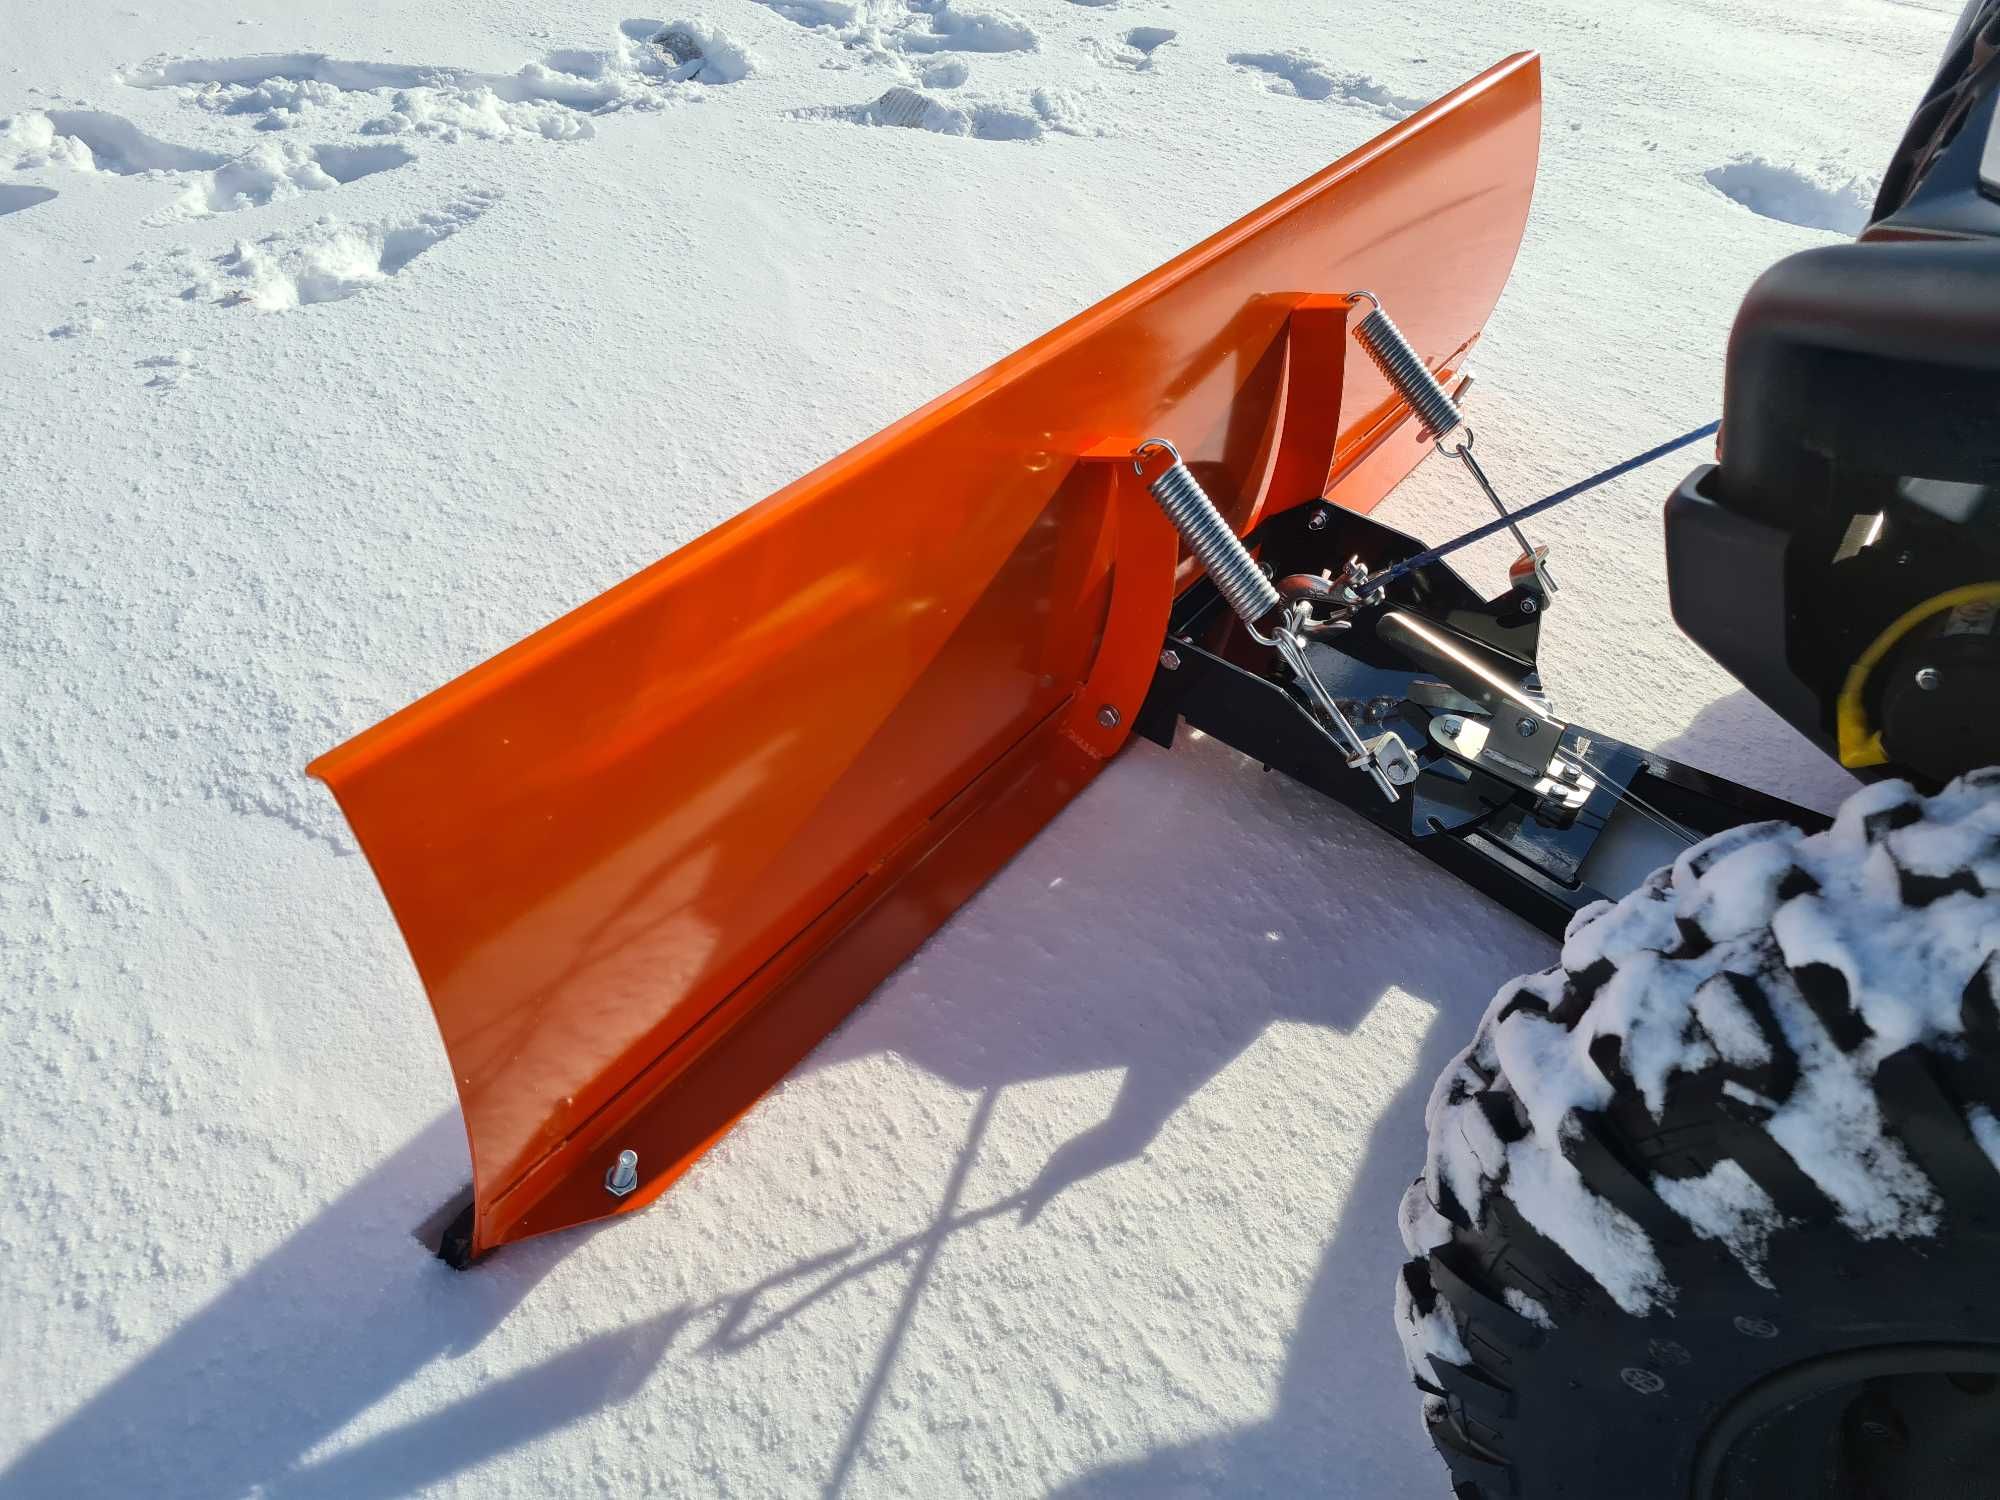 Pług do śniegu do quada 150cm quad CF MOTO CFMOTO 450 / 520 / 625 /850